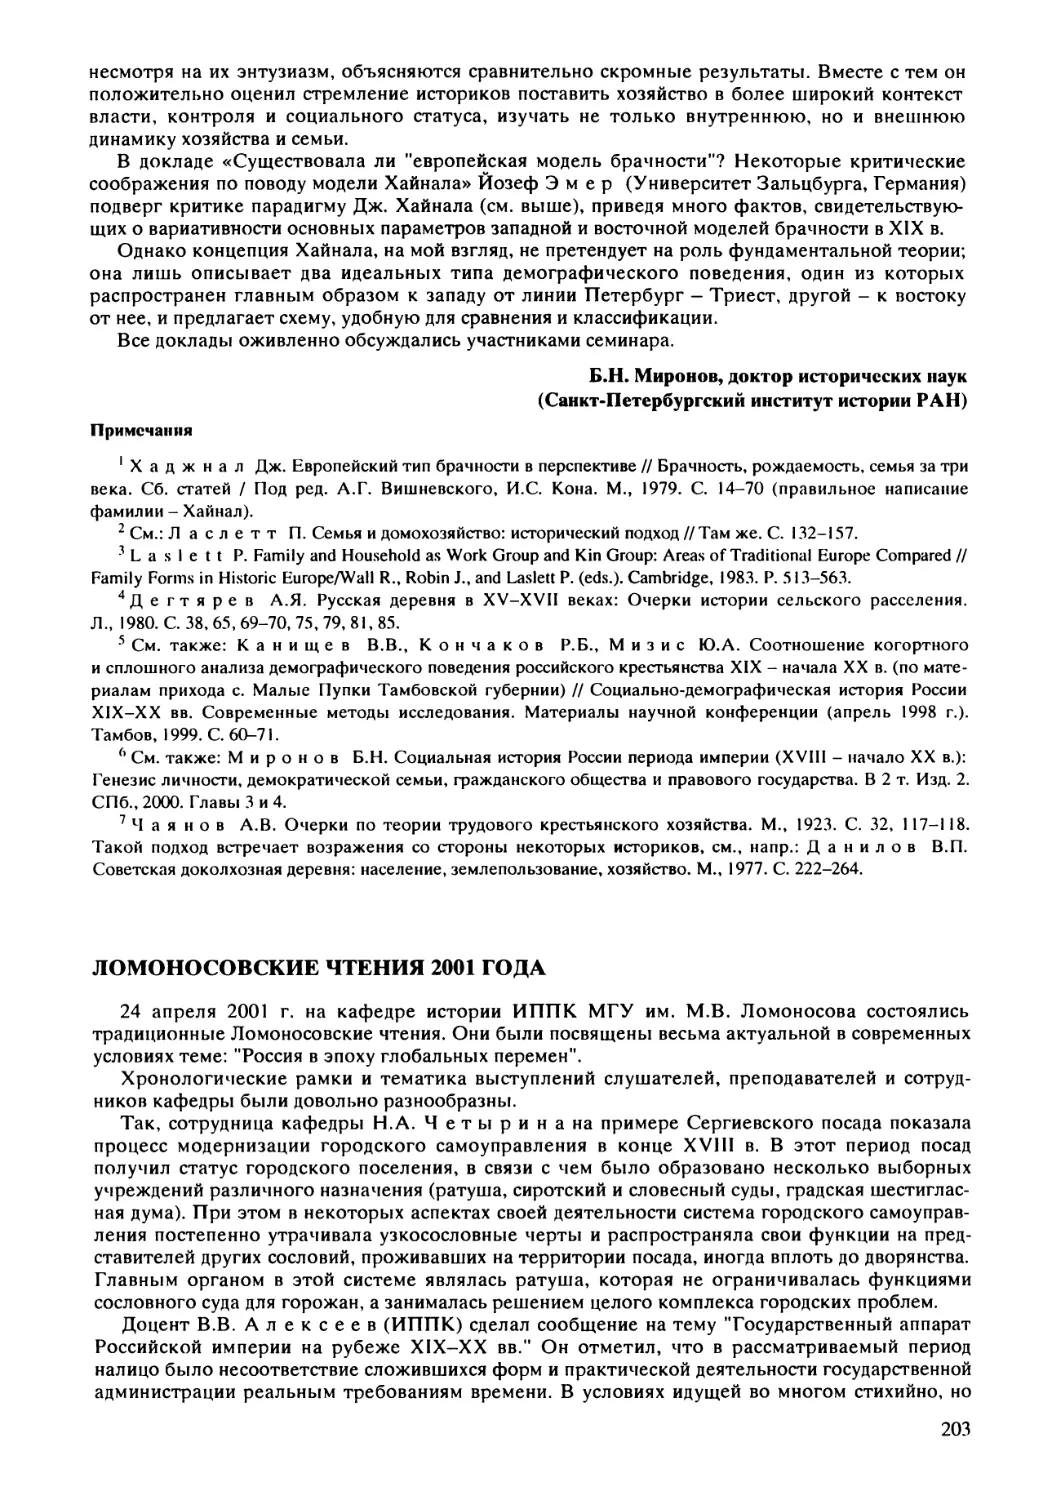 Алексеев В.В., Бочарова З.С. - Ломоносовские чтения 2001 г